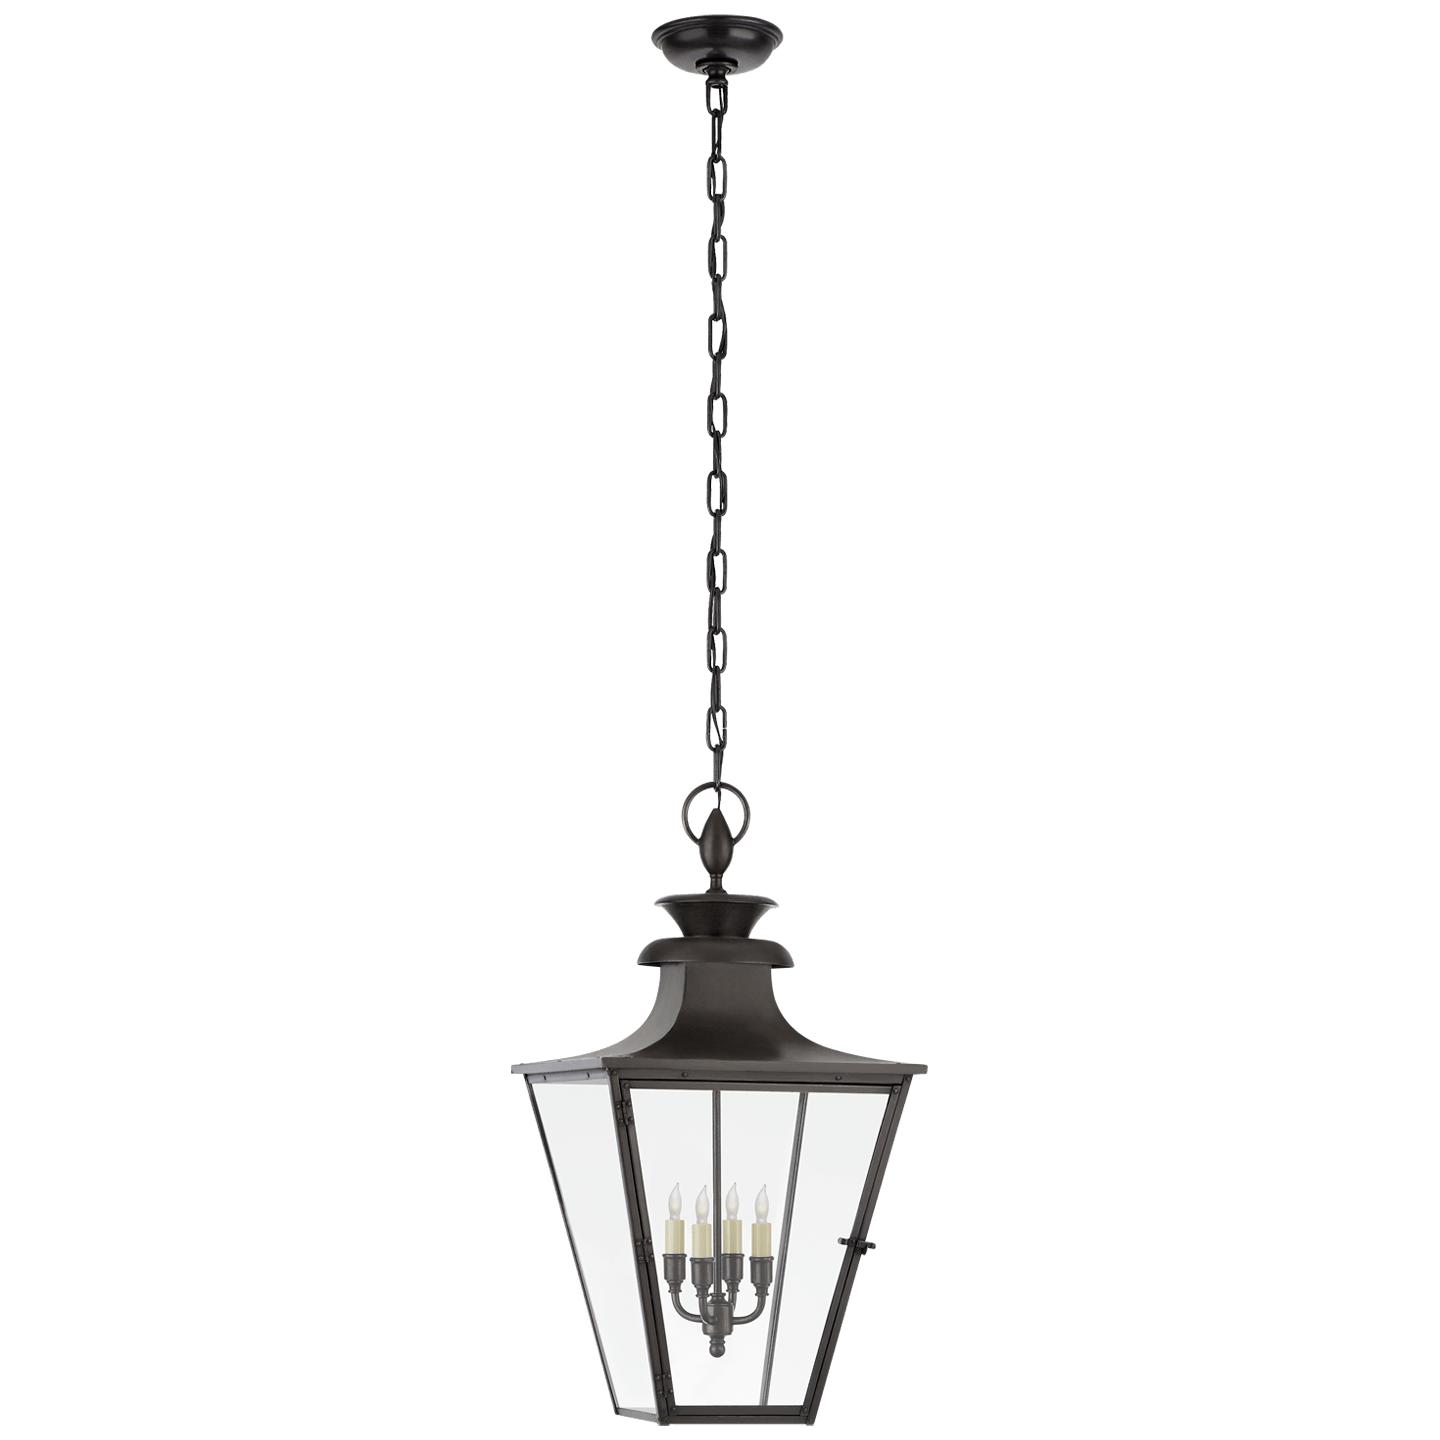 Купить Подвесной светильник Albermarle Medium Hanging Lantern в интернет-магазине roooms.ru